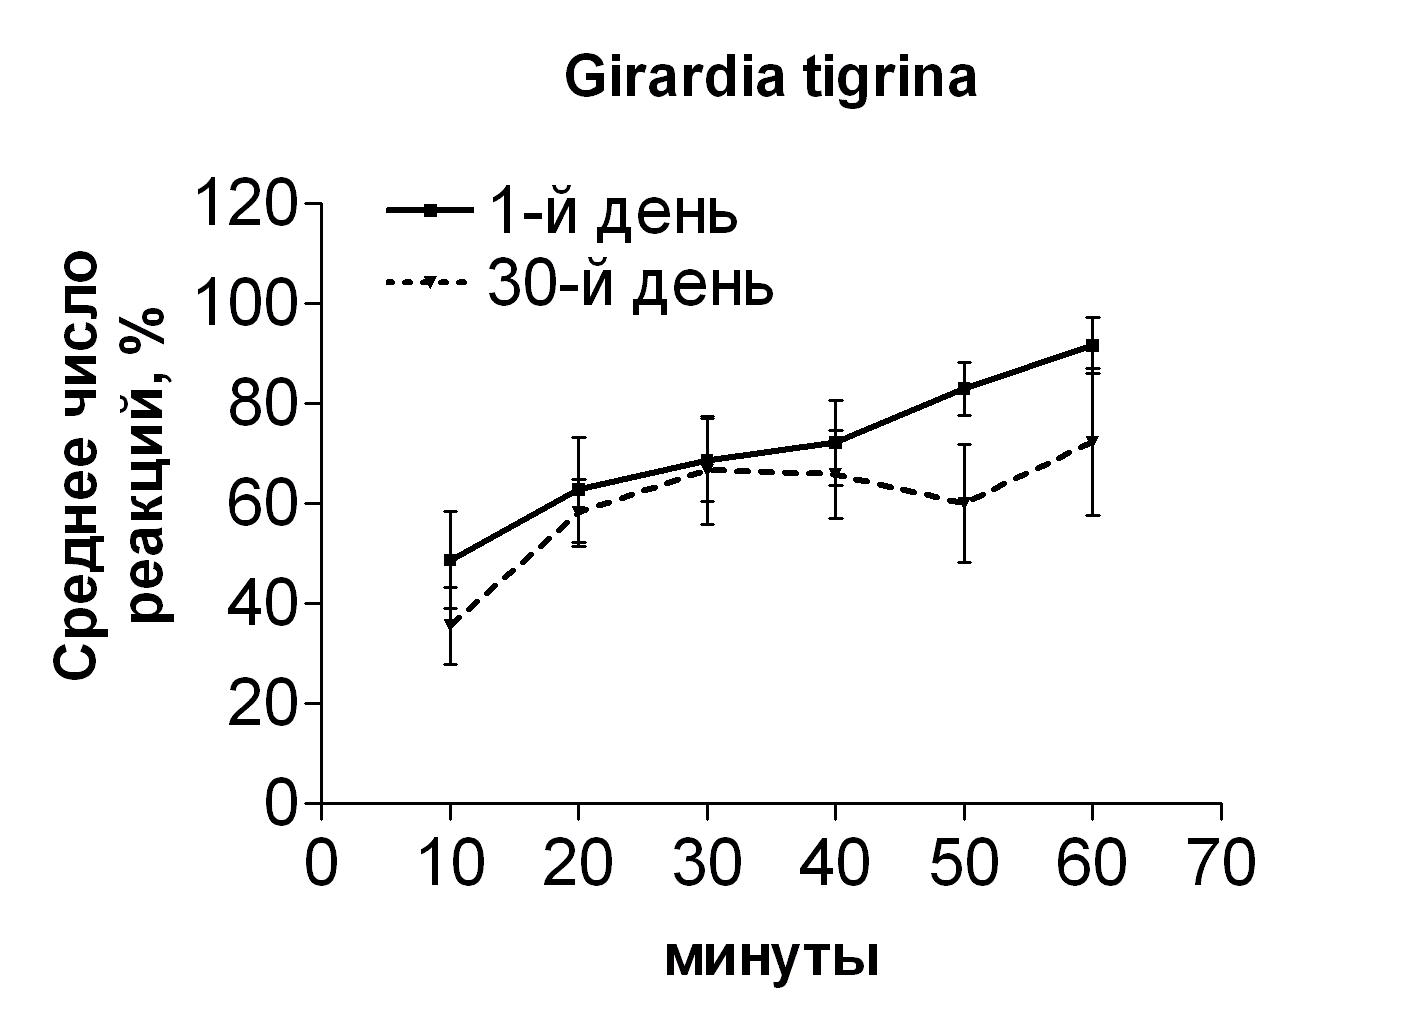 Количество реакций фототаксиса в группе планарий G. tigrina